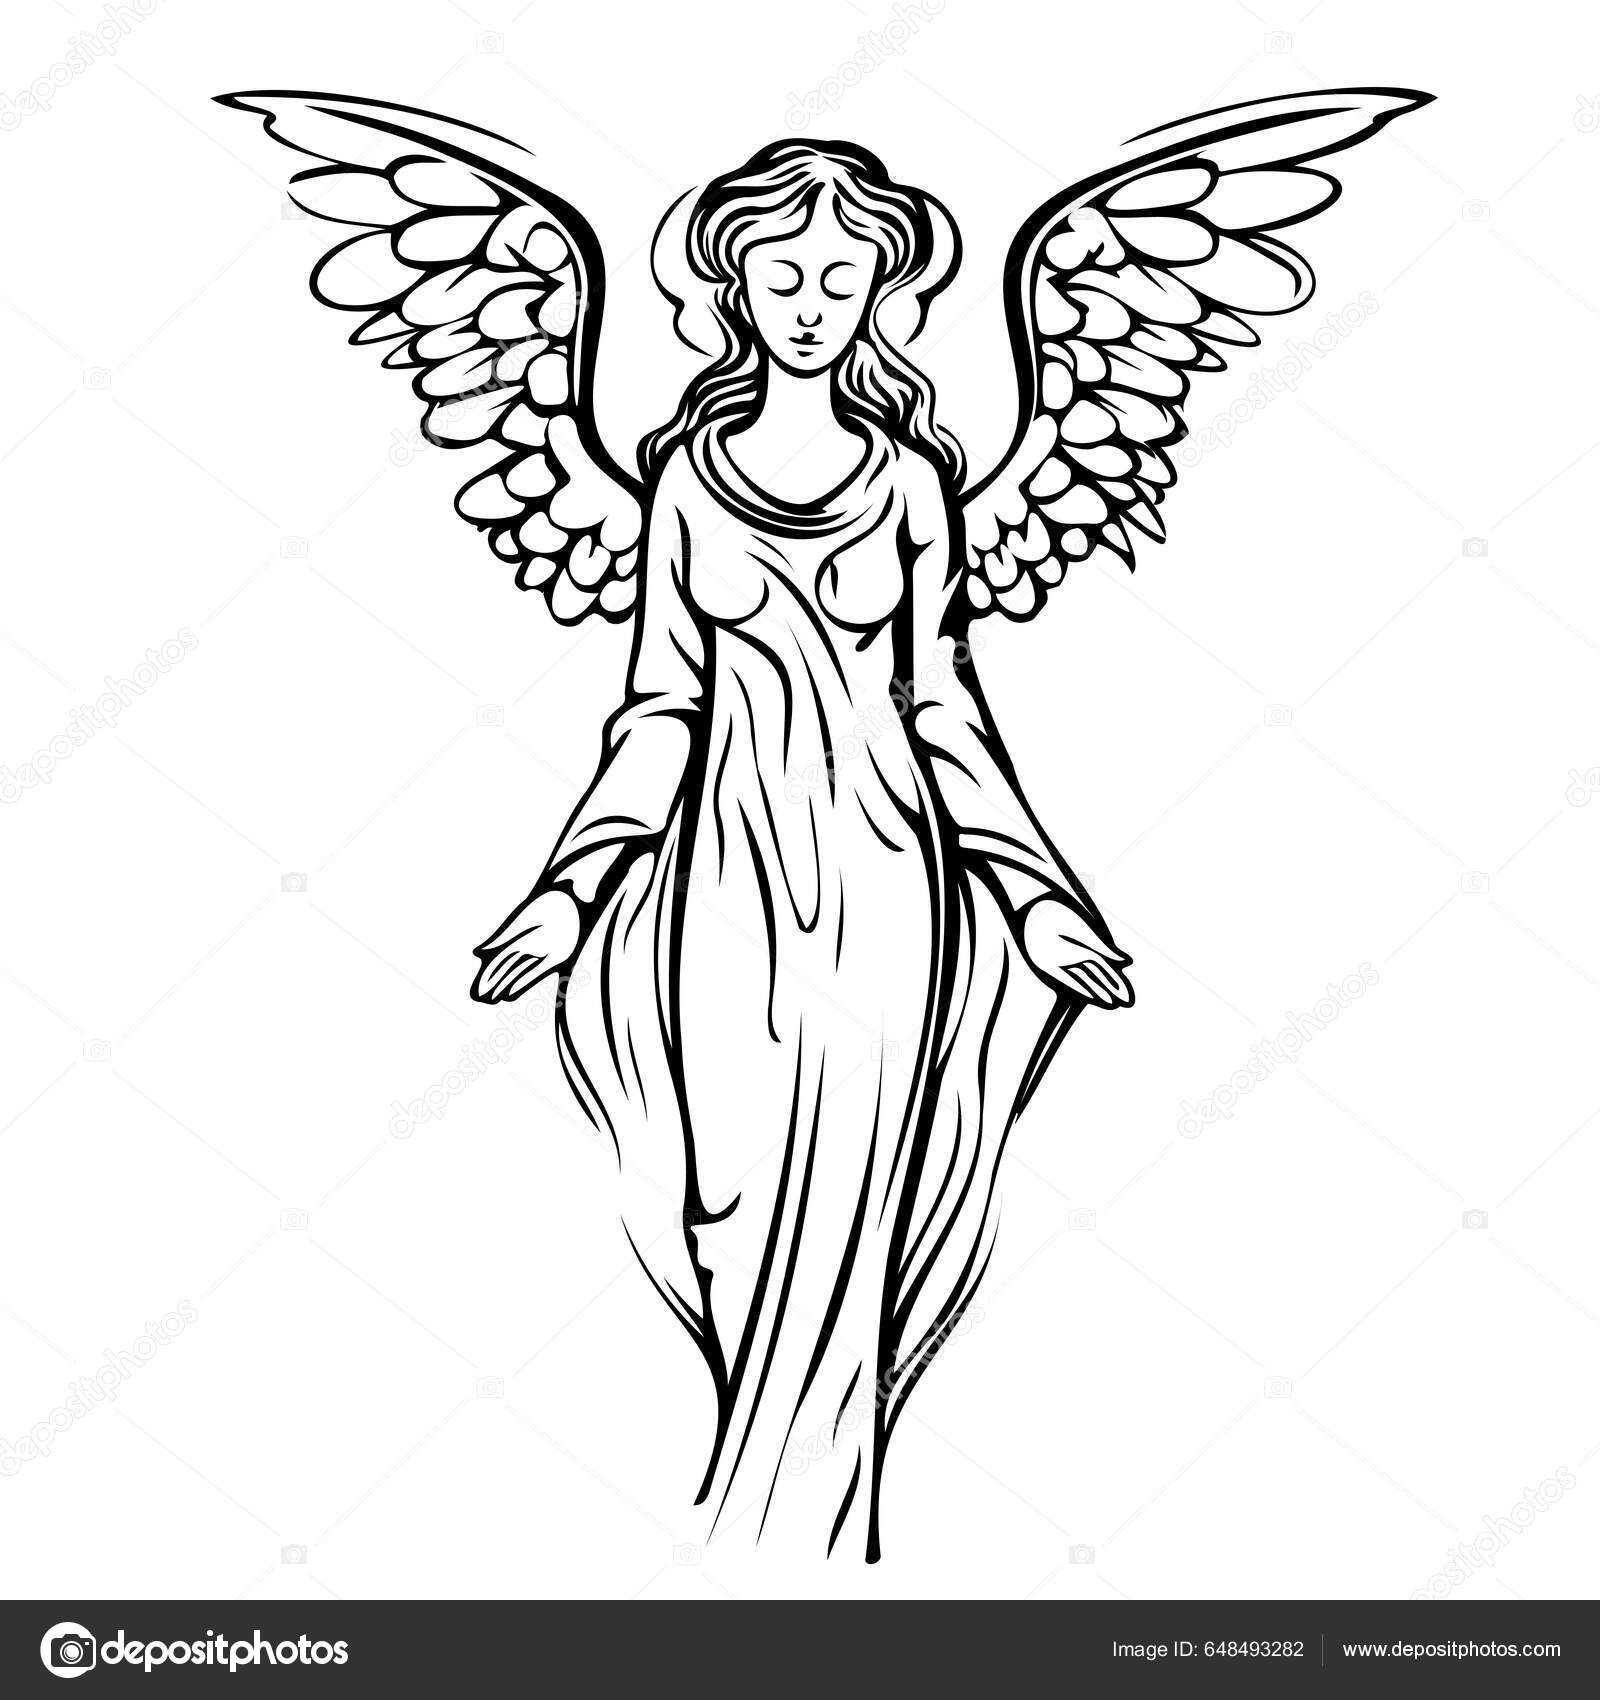 Um desenho de uma menina com asas que dizem'anjo